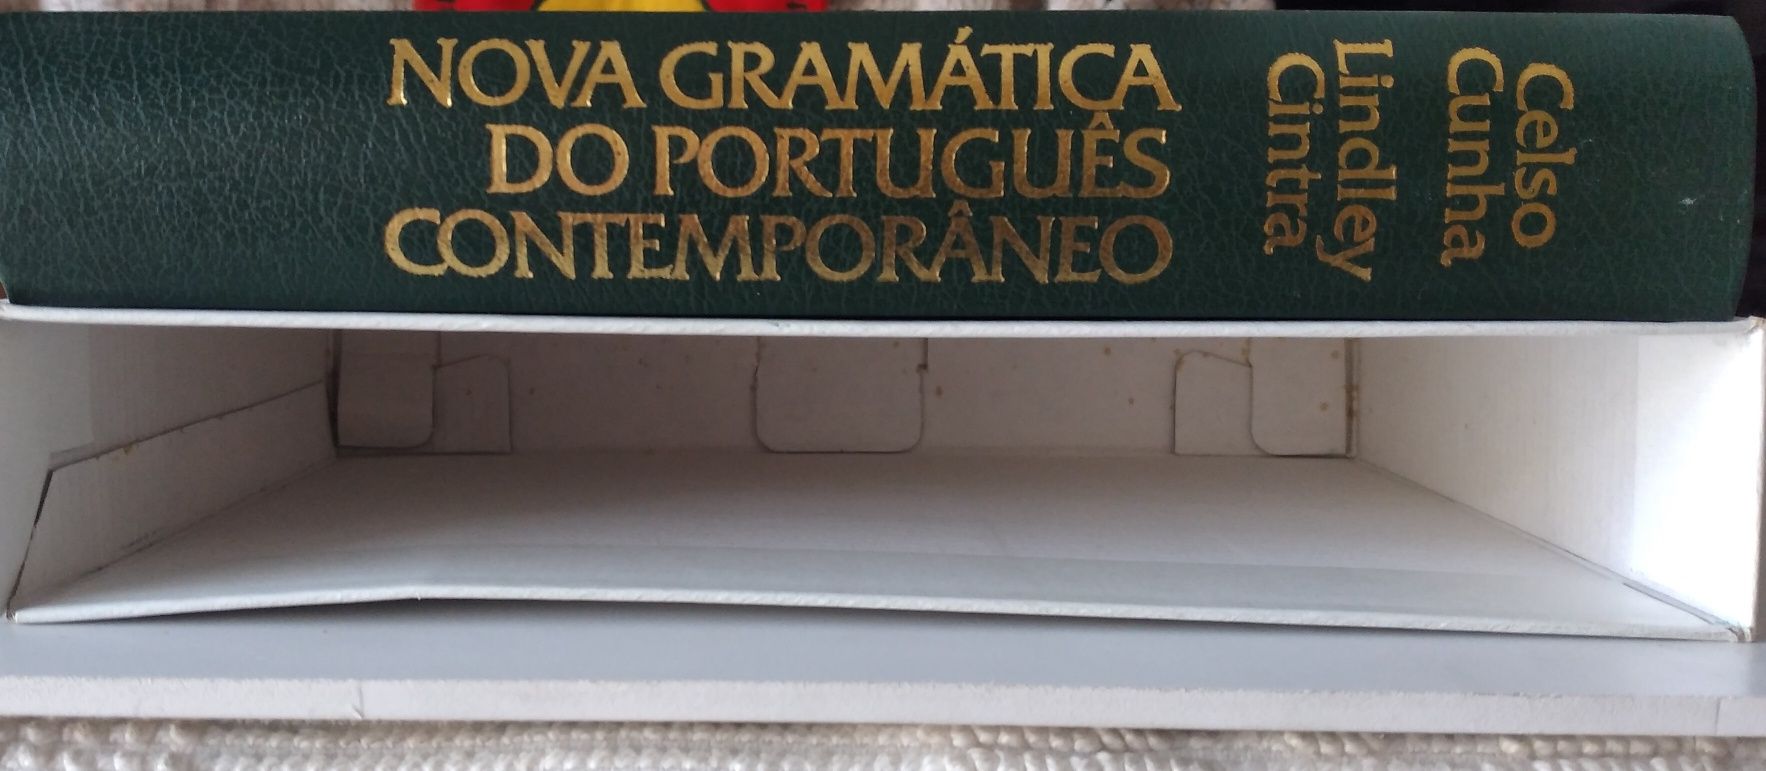 nova gramática português contemporâneo - Celso Cunha e Lindley Cintra